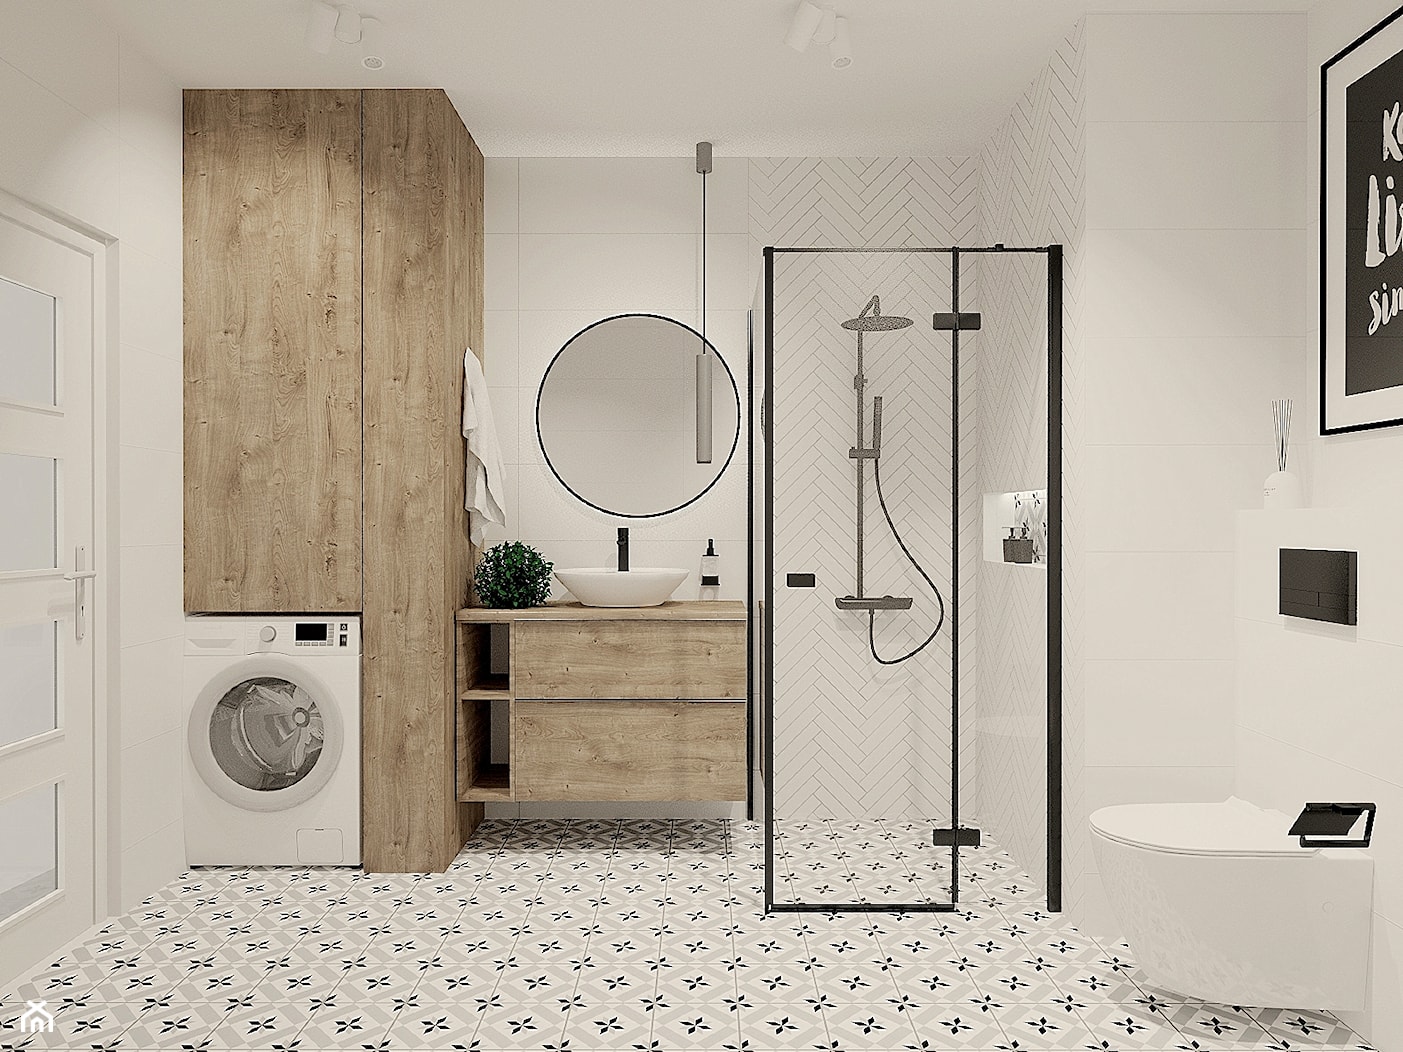 Biała łazienka z cegiełkami i patchworkiem - zdjęcie od kaflando - Homebook